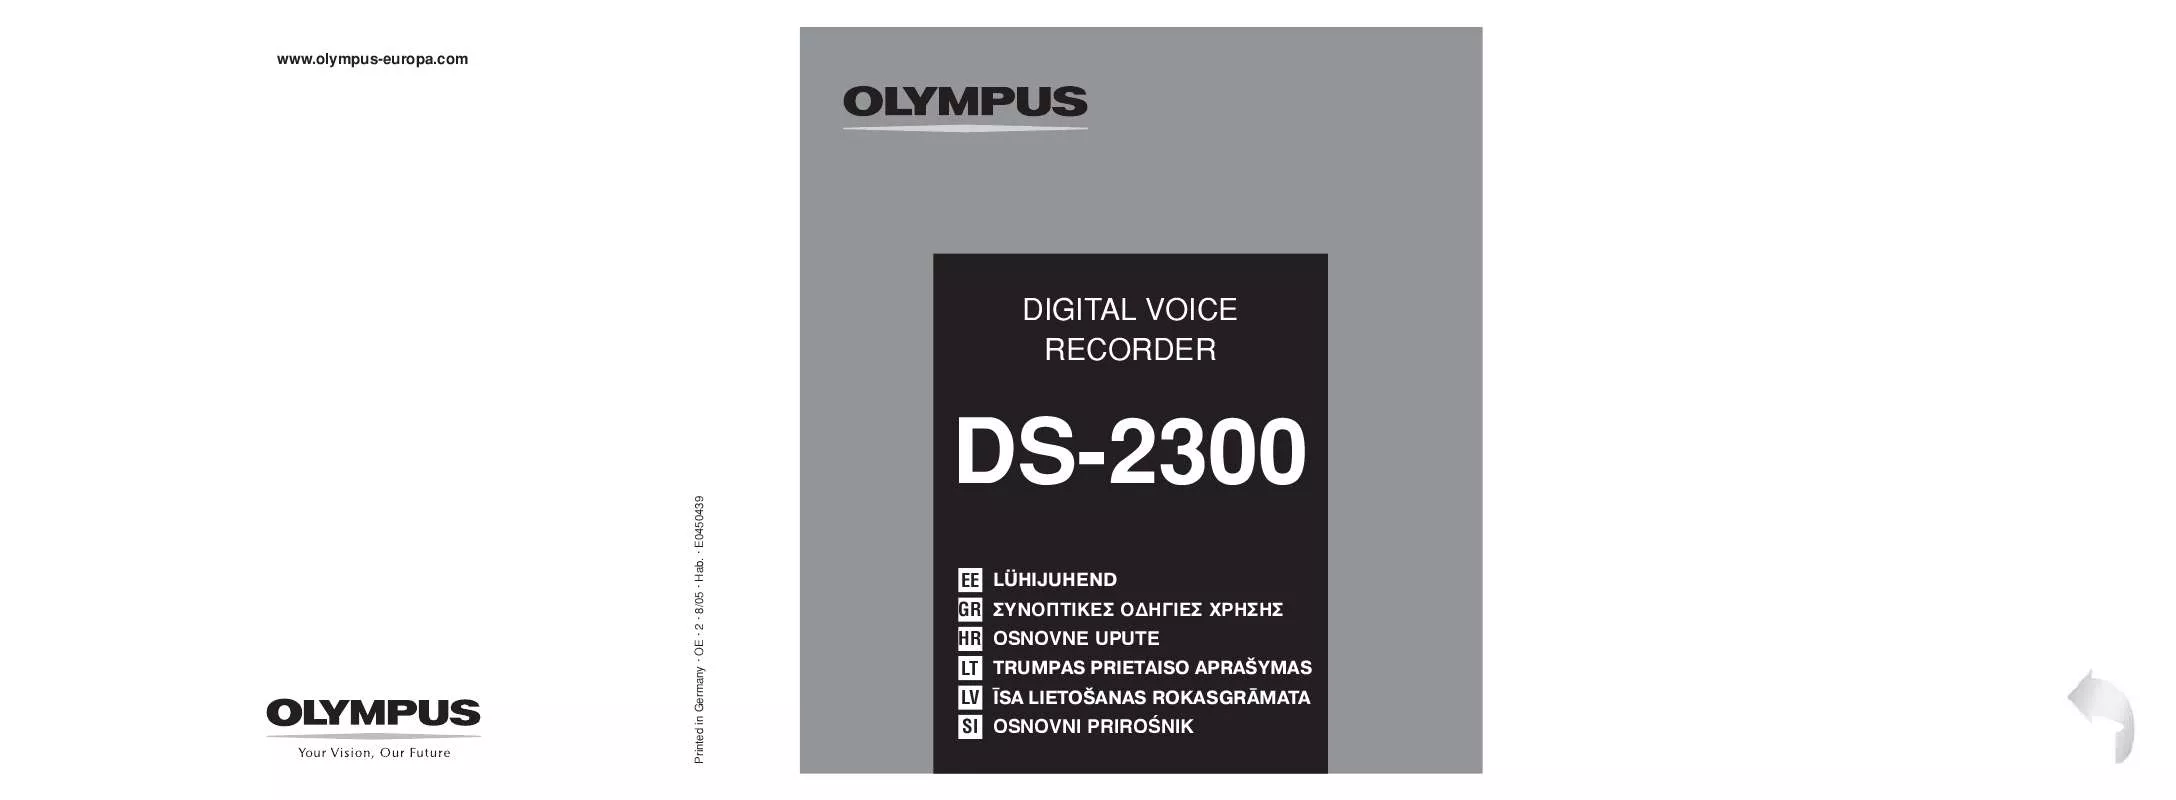 Mode d'emploi OLYMPUS DS-2300